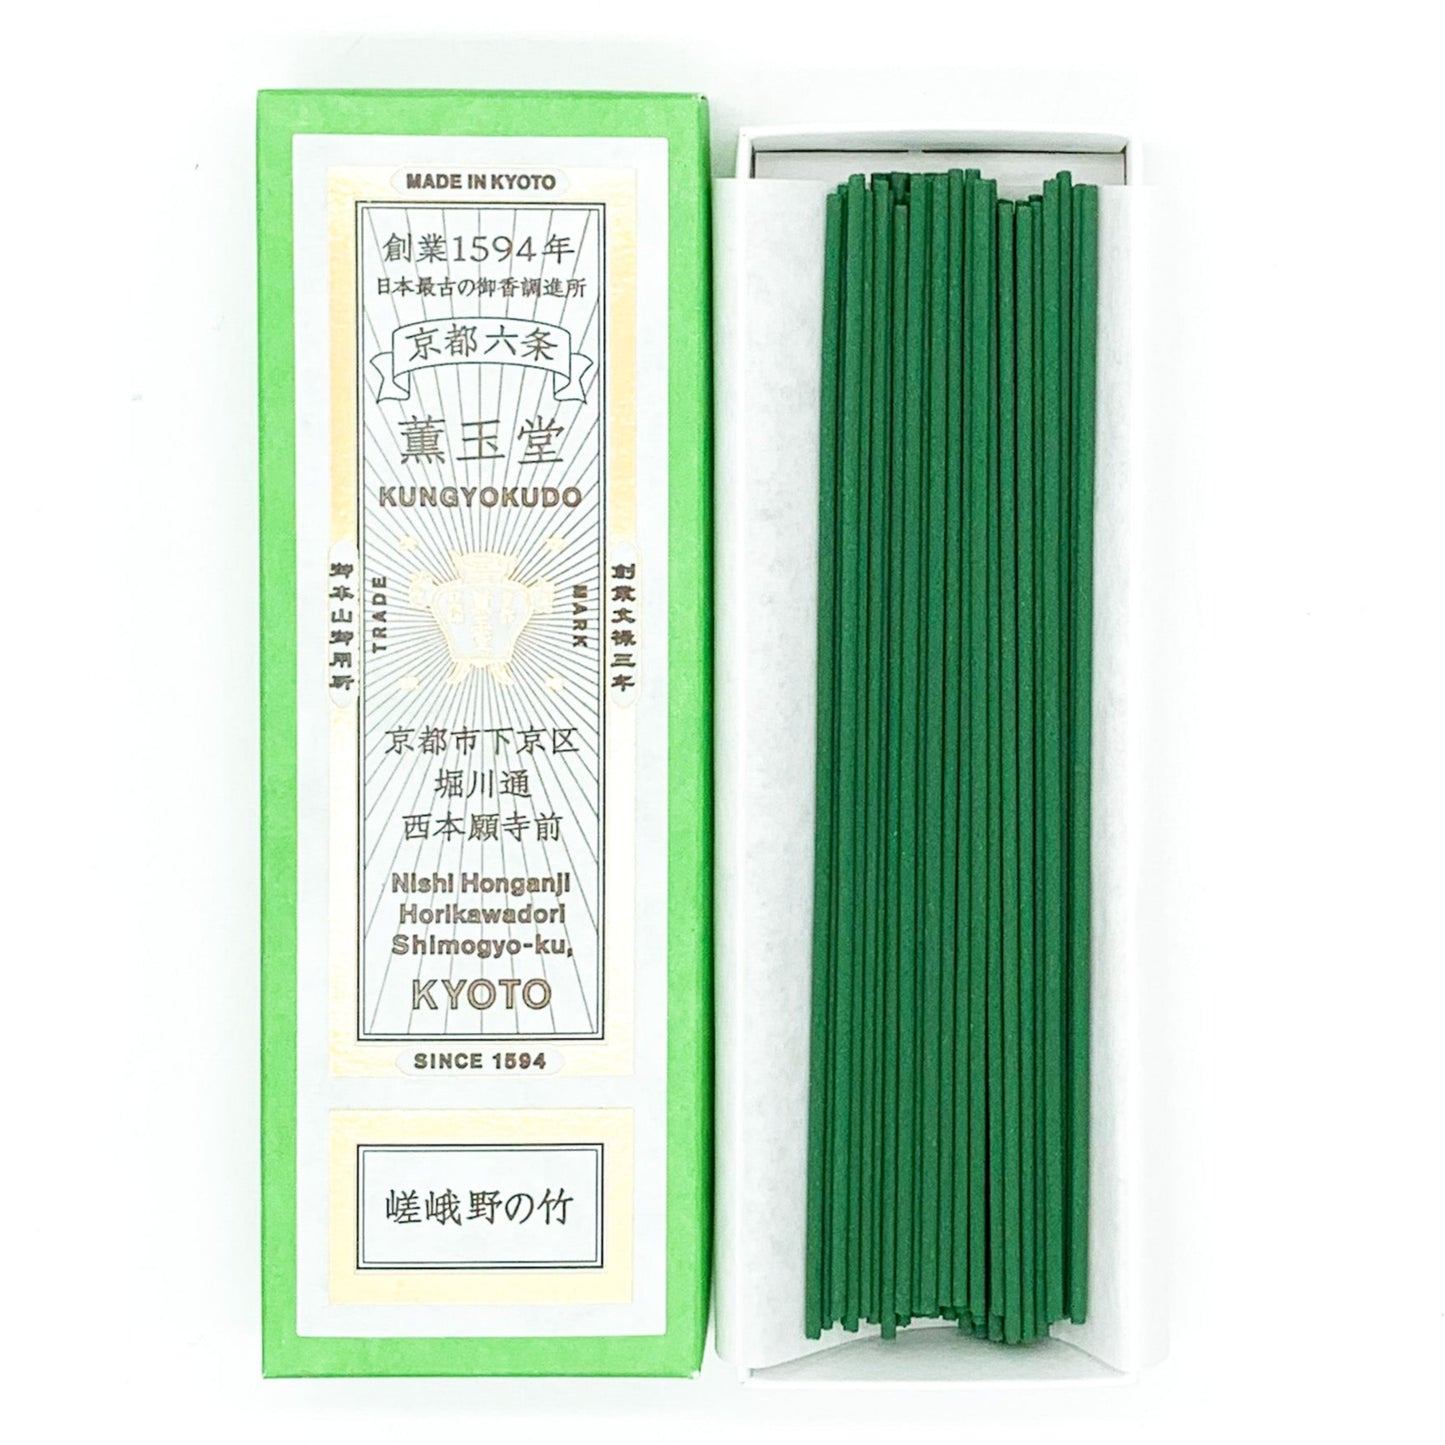 Kungyokudo Incense Sticks in Paper Box - Sagano Bamboo